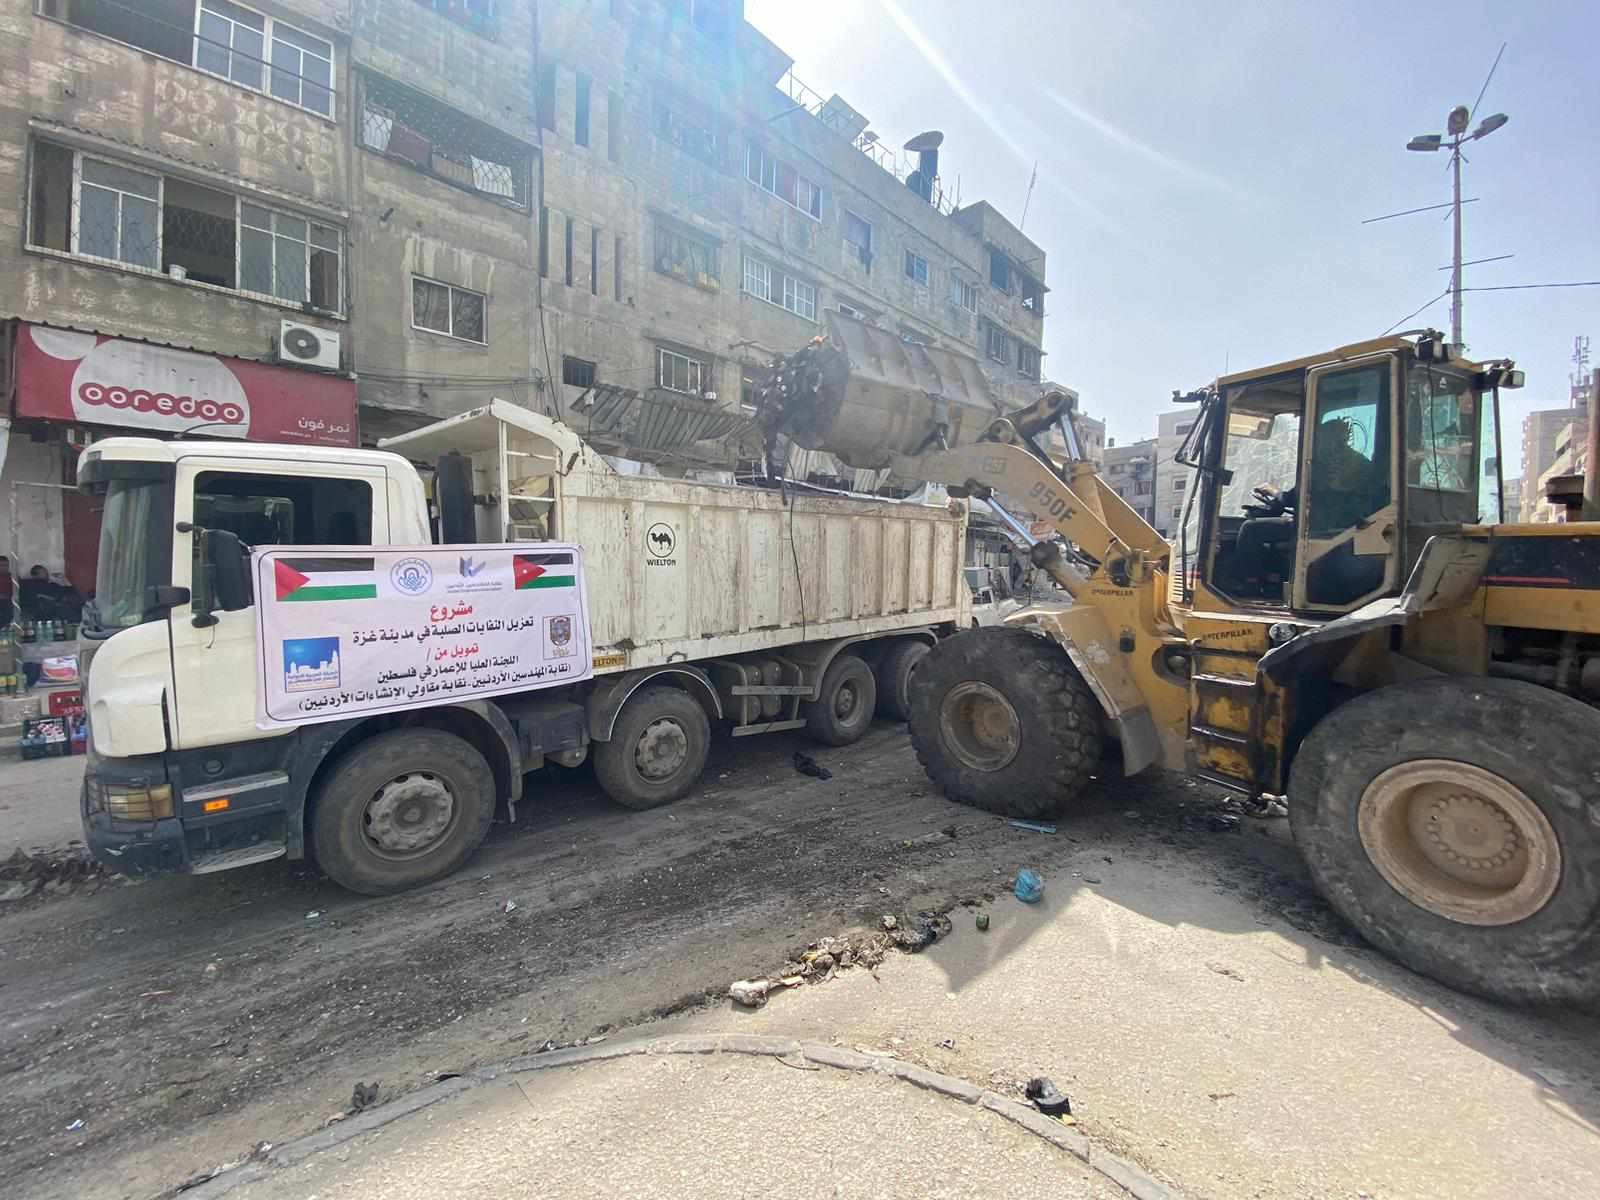 بالصور : هيئة إعمار غزة تنفذ مشروع تجميع وترحيل النفايات الصلبة من شوارع وطرقات مدينة غزة.